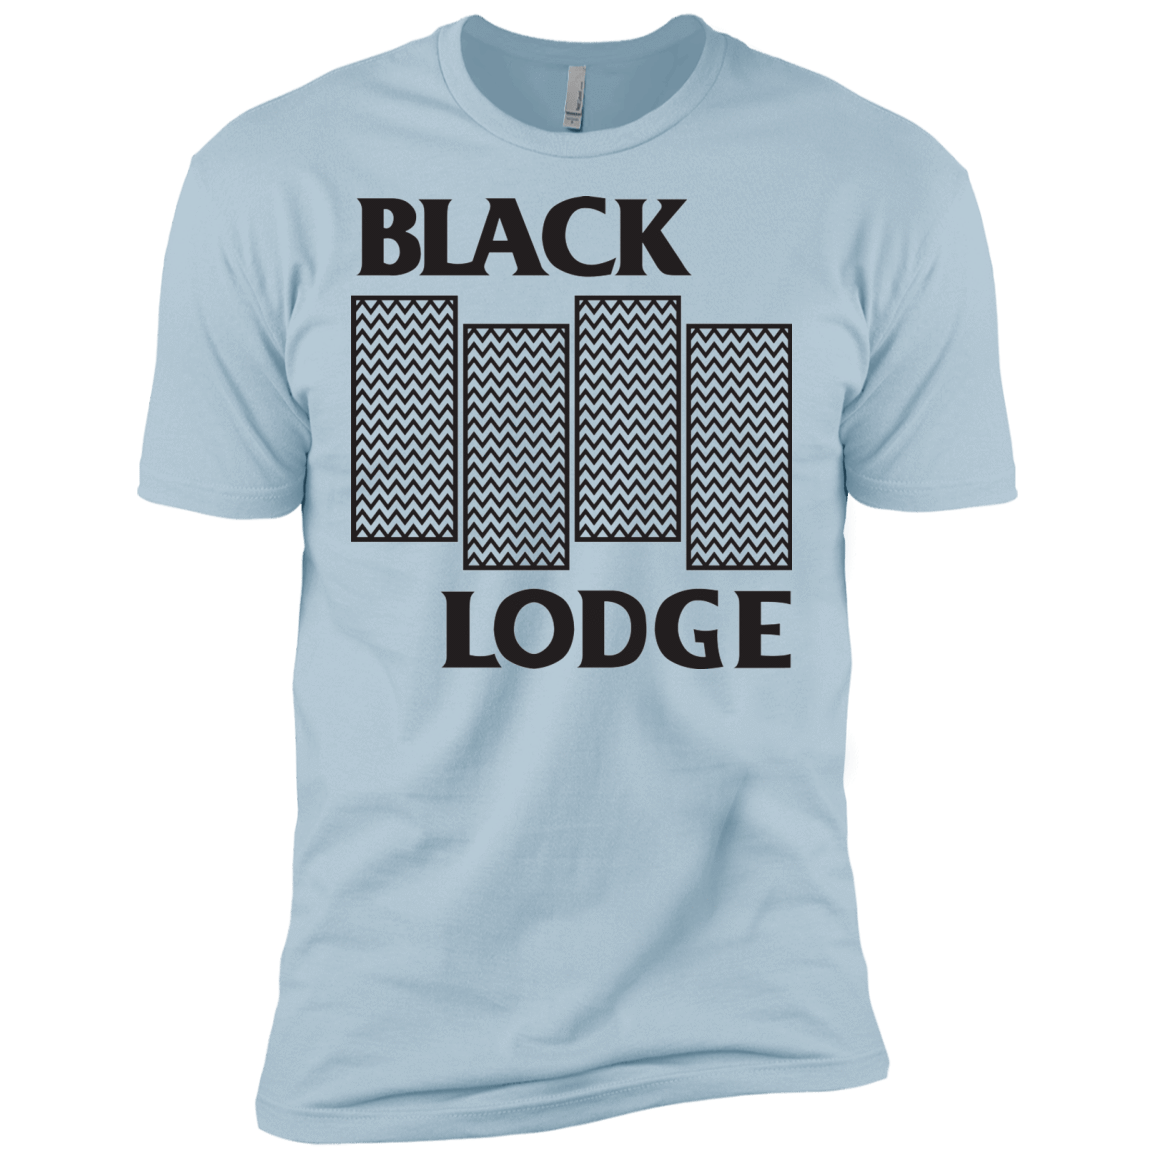 T-Shirts Light Blue / X-Small BLACK LODGE Men's Premium T-Shirt